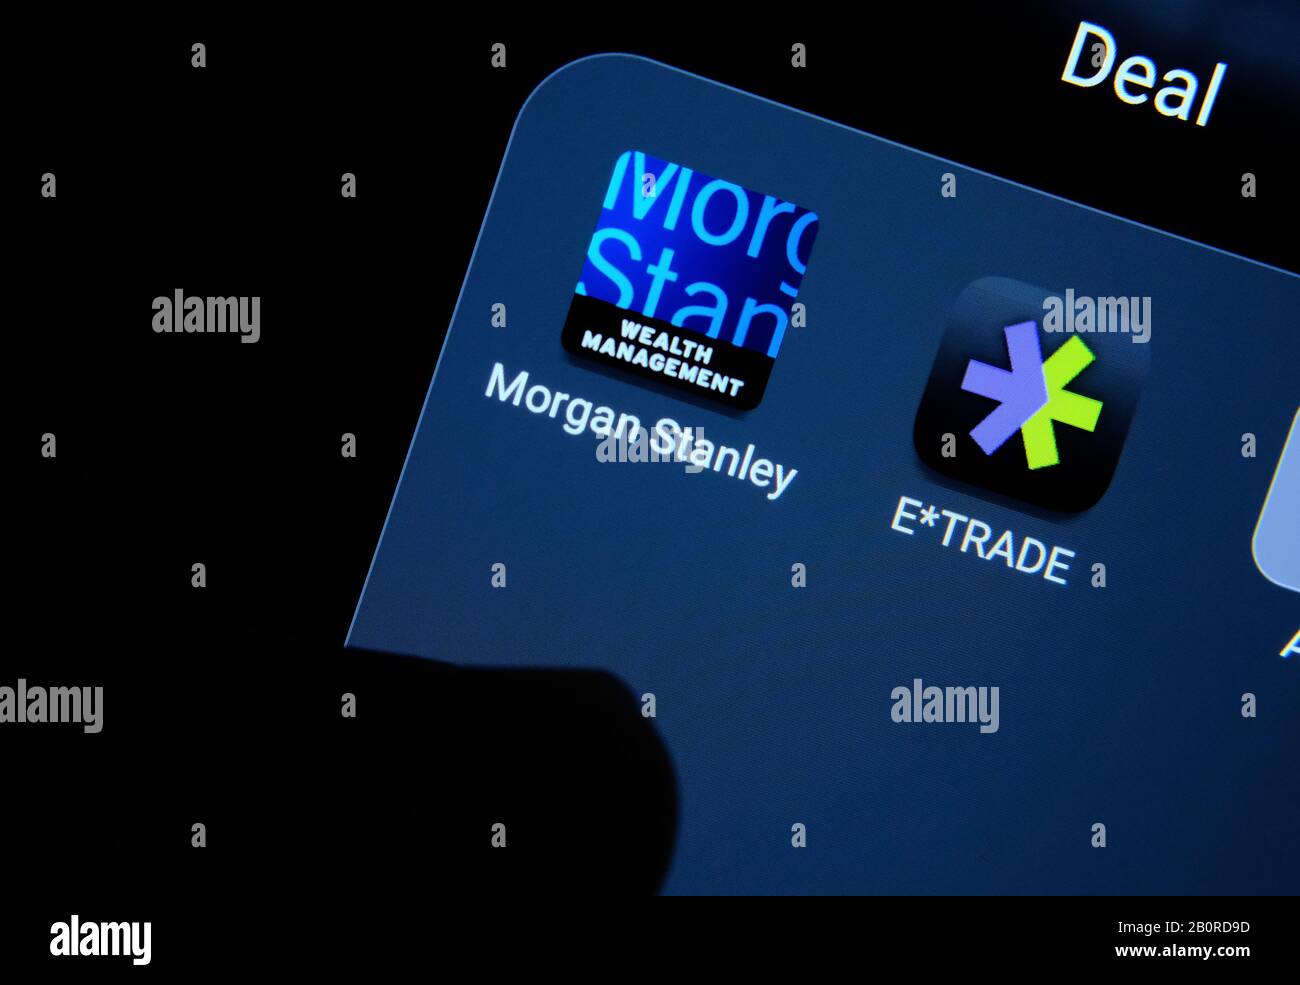 Morgan Stanley und E-Trade-Apps auf einem Smartphone-Bildschirm und zeigen mit dem Finger auf sie. Konzept für Unternehmensakquisition. Stockfoto